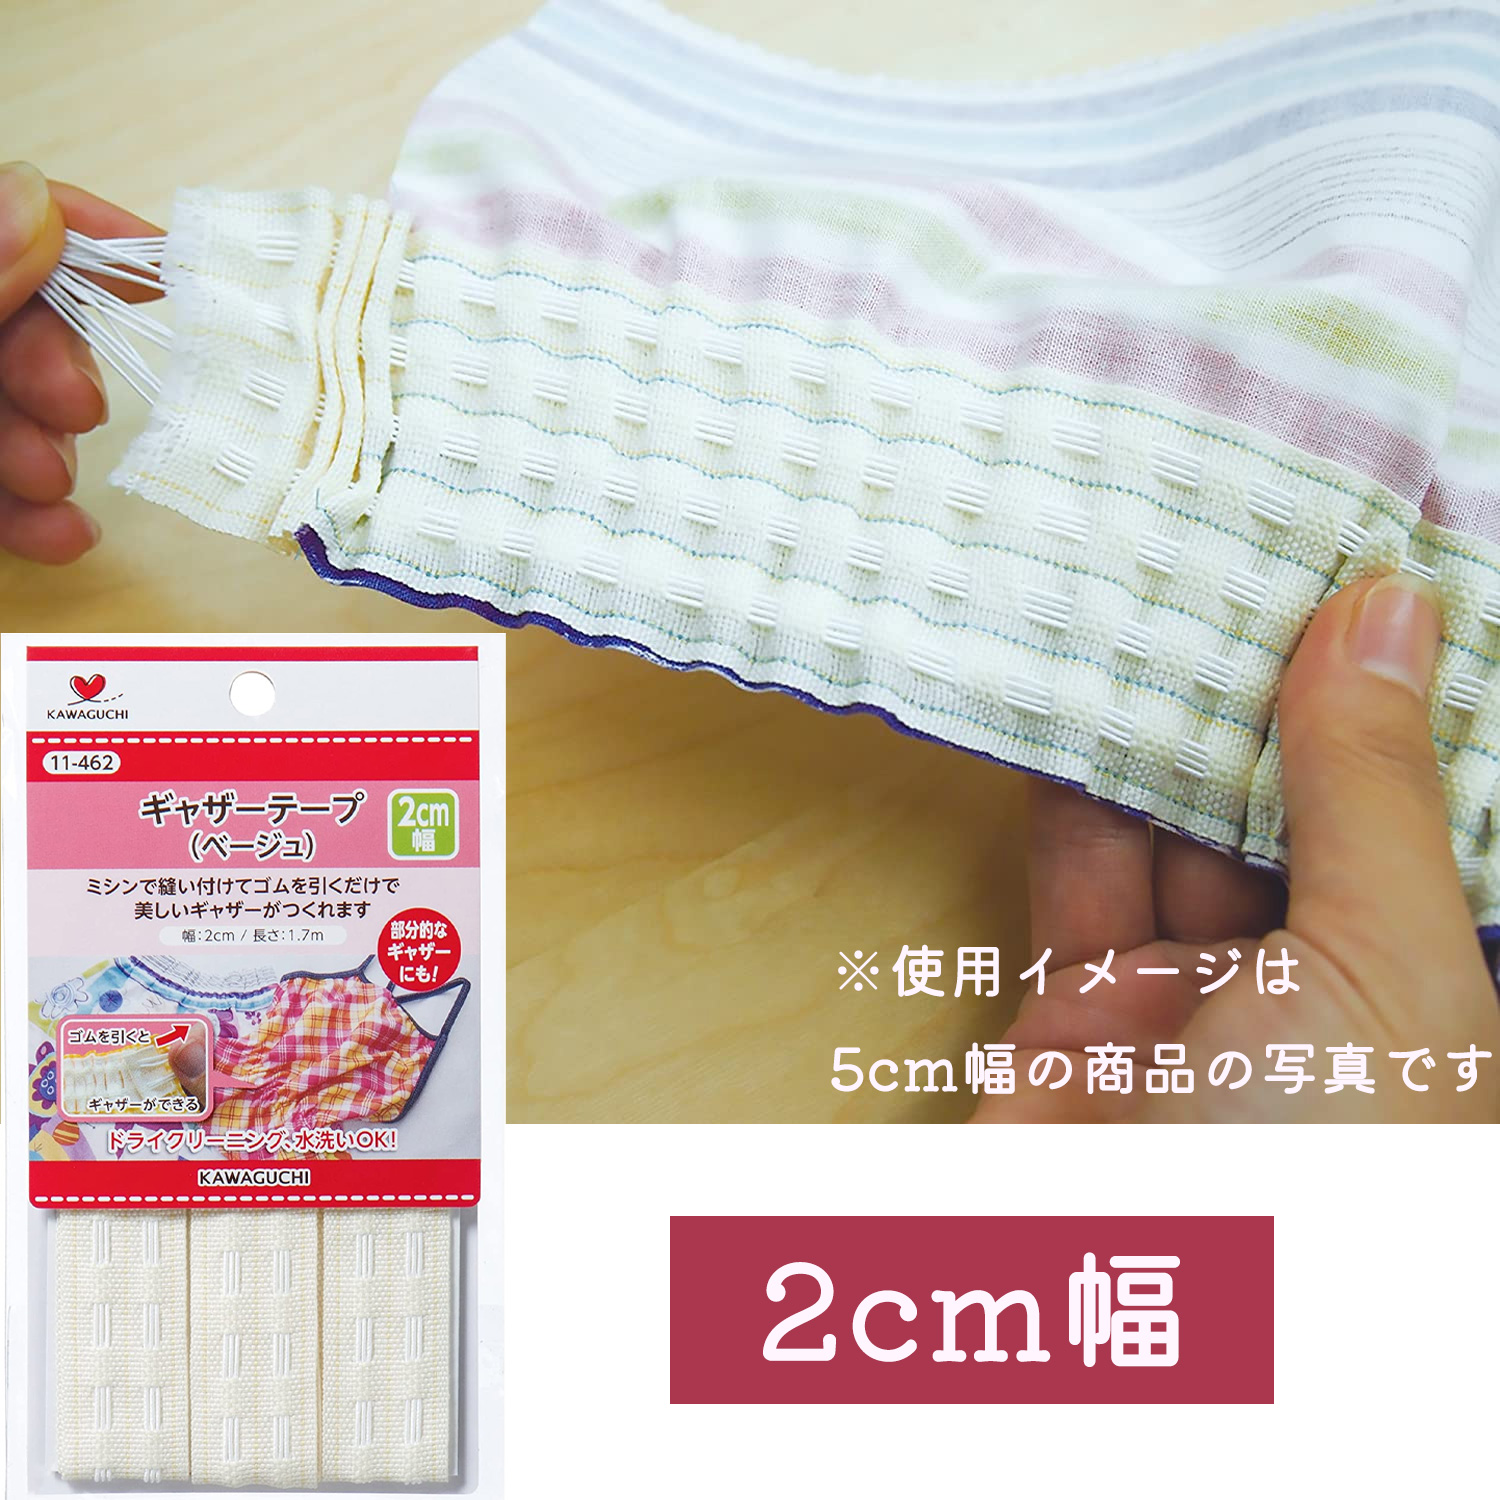 TK11462 KAWAGUCHI ギャザーテープ ベージュ 2cm巾×1.7m巻 (枚)「手芸